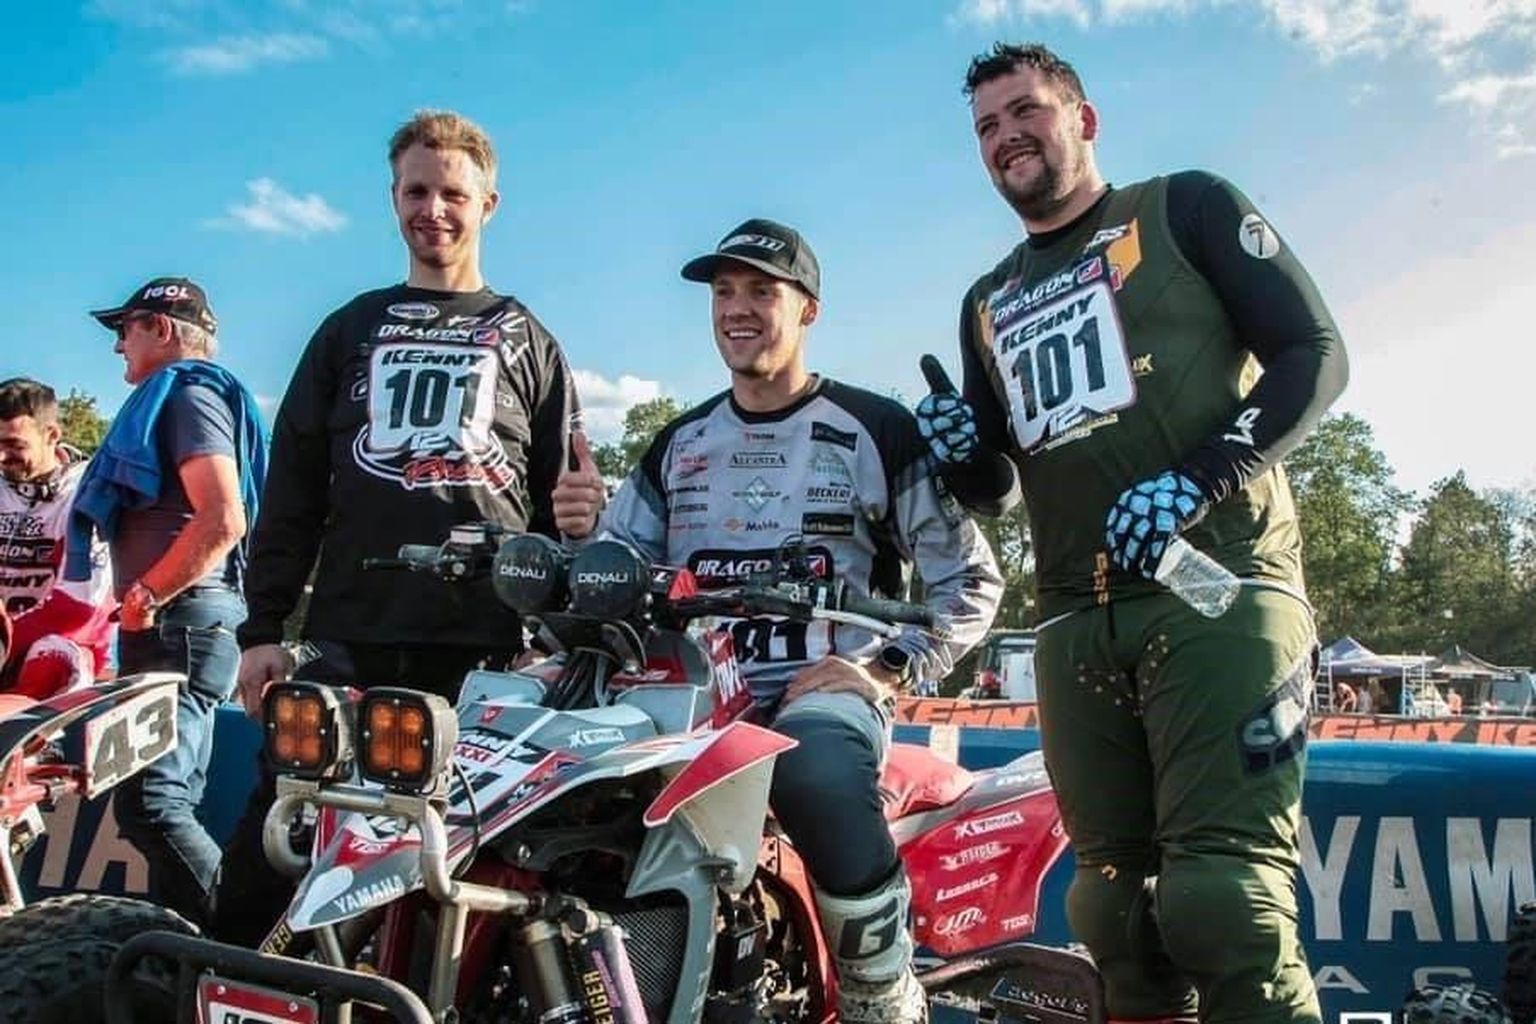 Pärnu motoklubi krossiäss Kevin Saar (keskel) kihutas koos kahe hollandlasega Prantsusmaal pjedestaali teisele astmele.